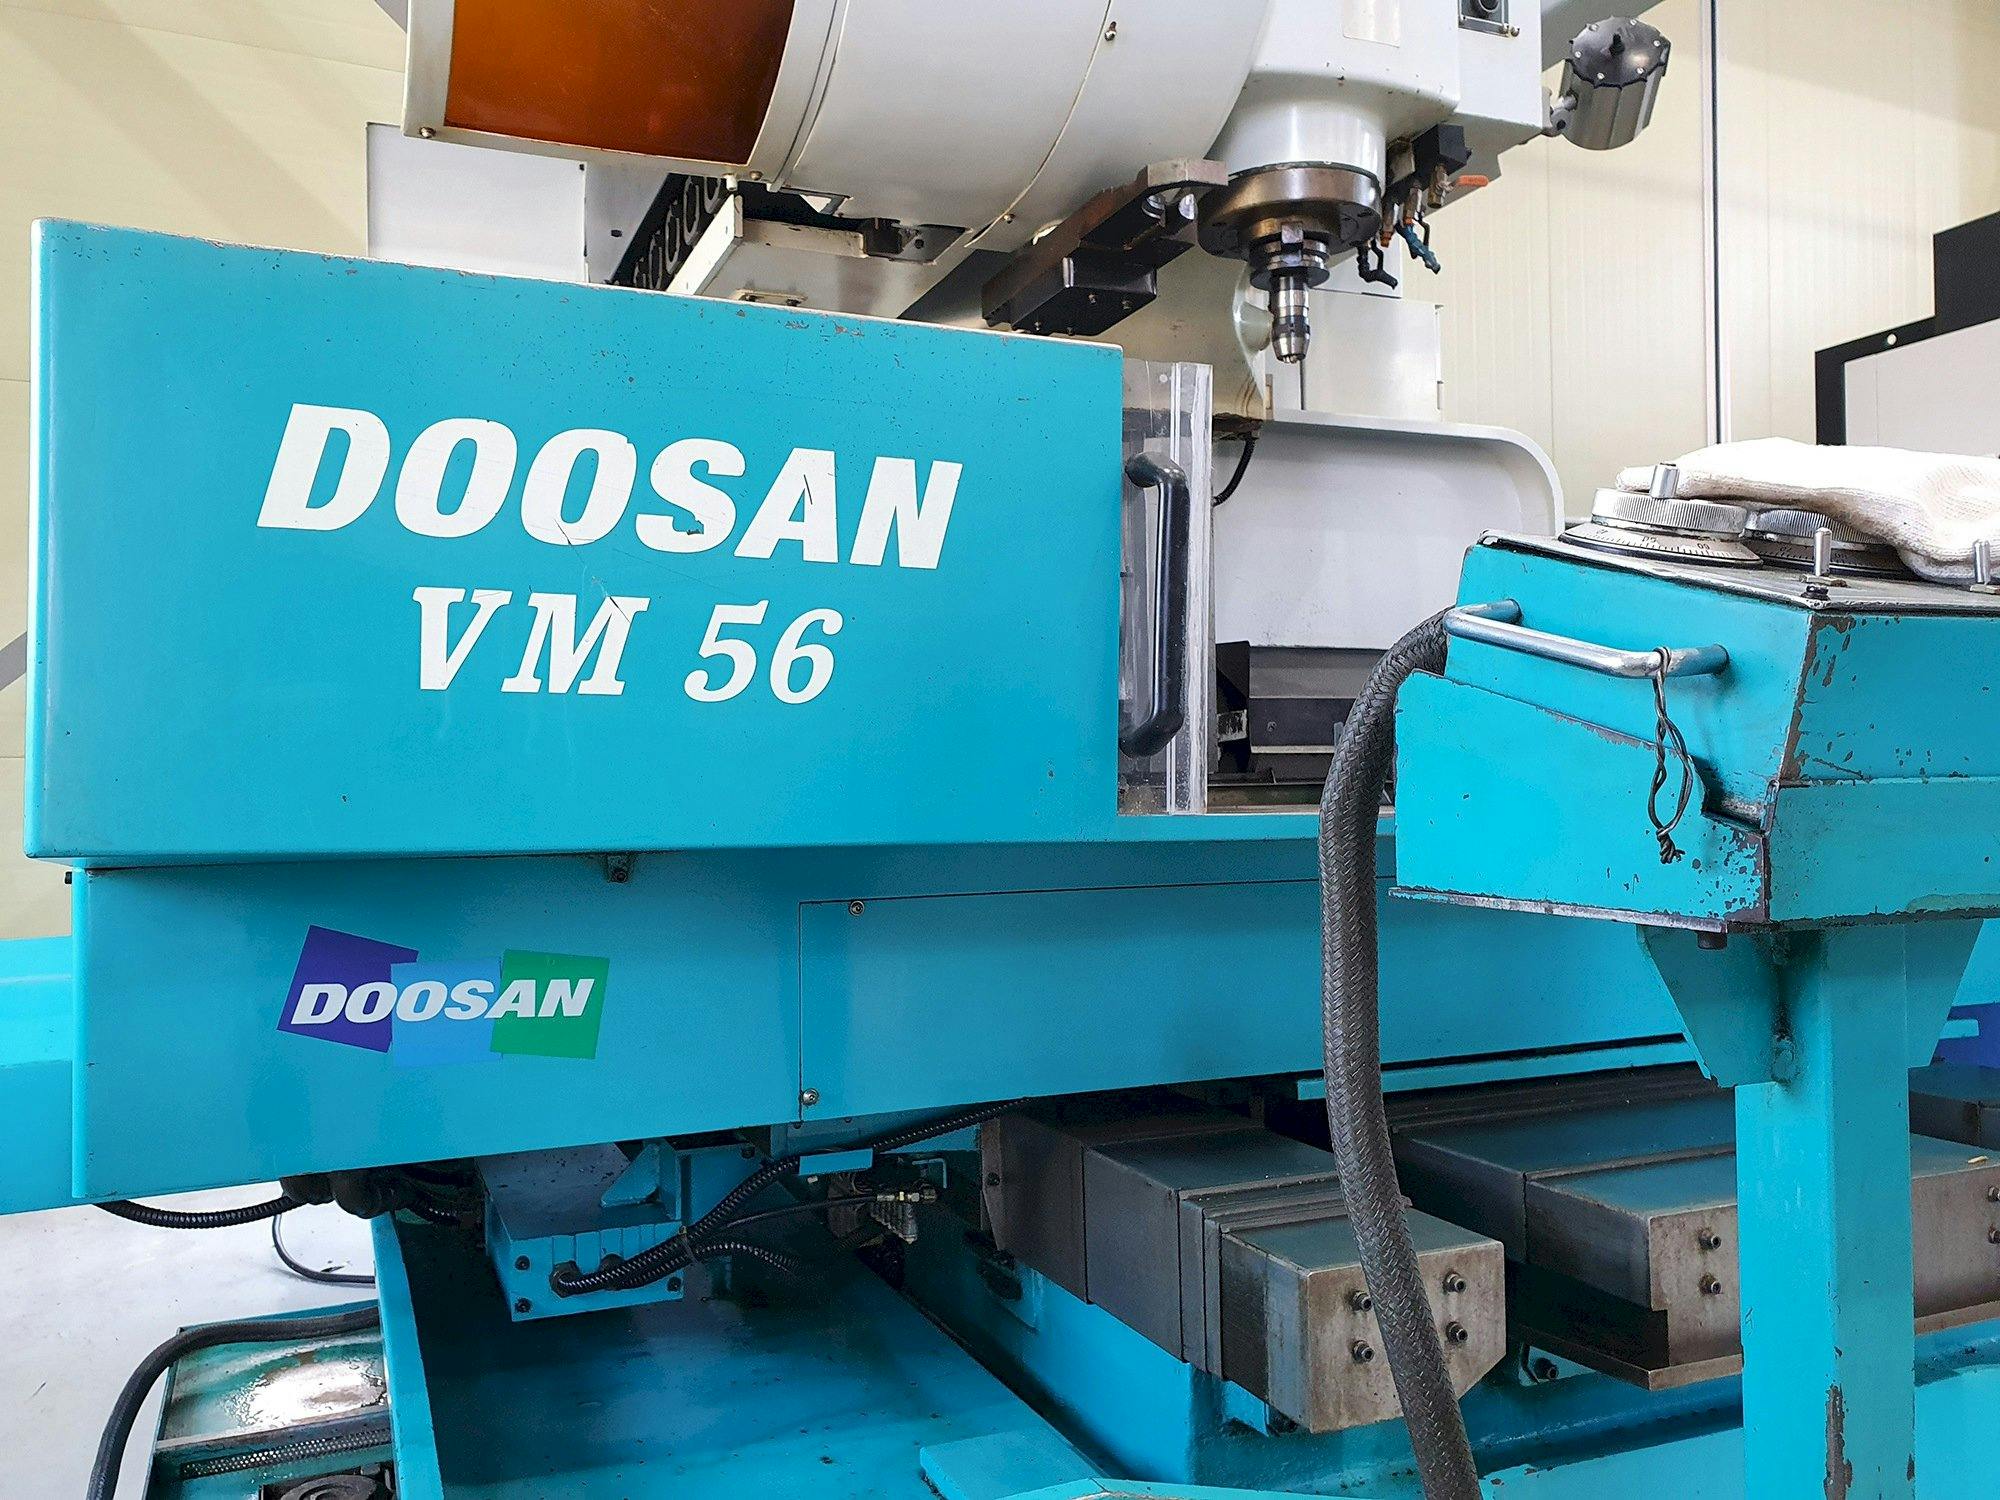 Widok z przodu maszyny Doosan VM56